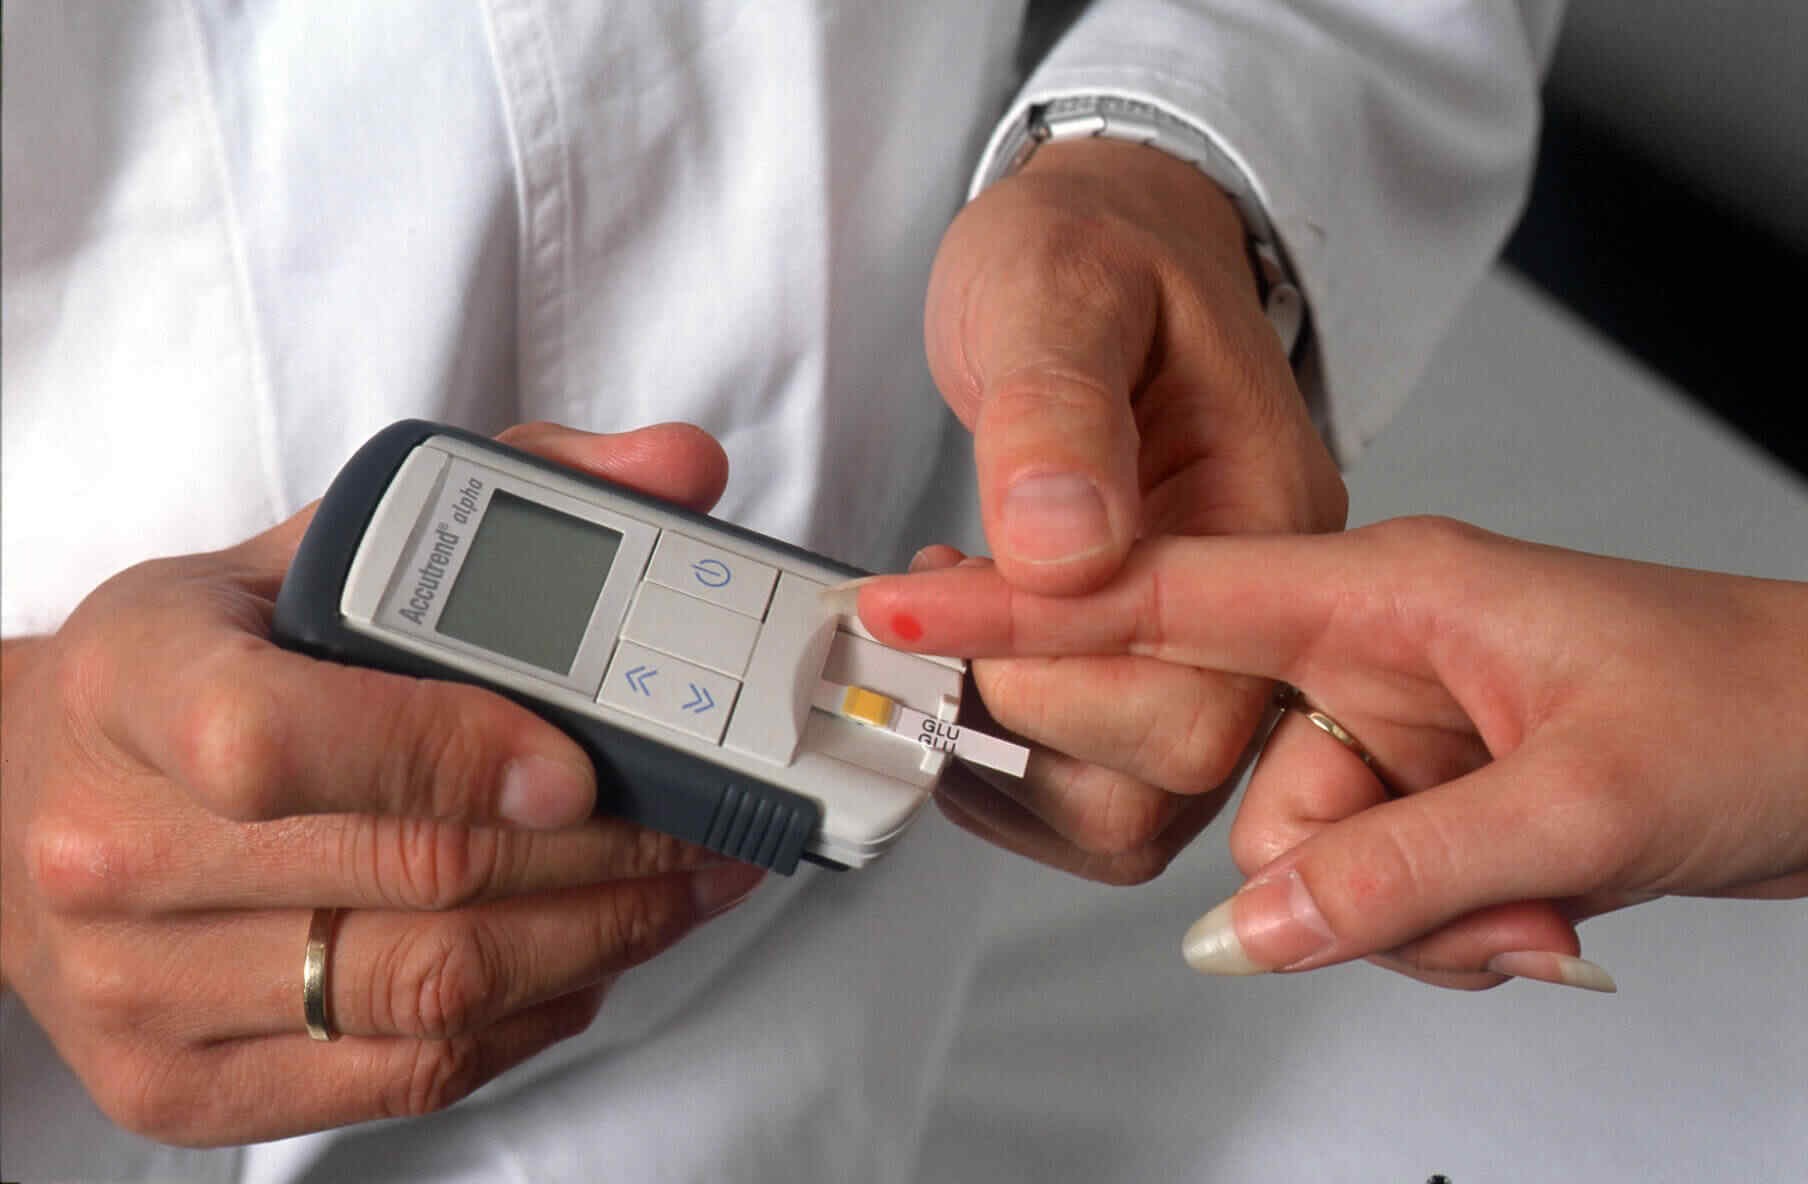 Тест особенности сахарного диабета. Сахарный диабет. Измерение уровня сахара в крови. Люди больные сахарным диабетом. Измерение сахара в крови глюкометром.